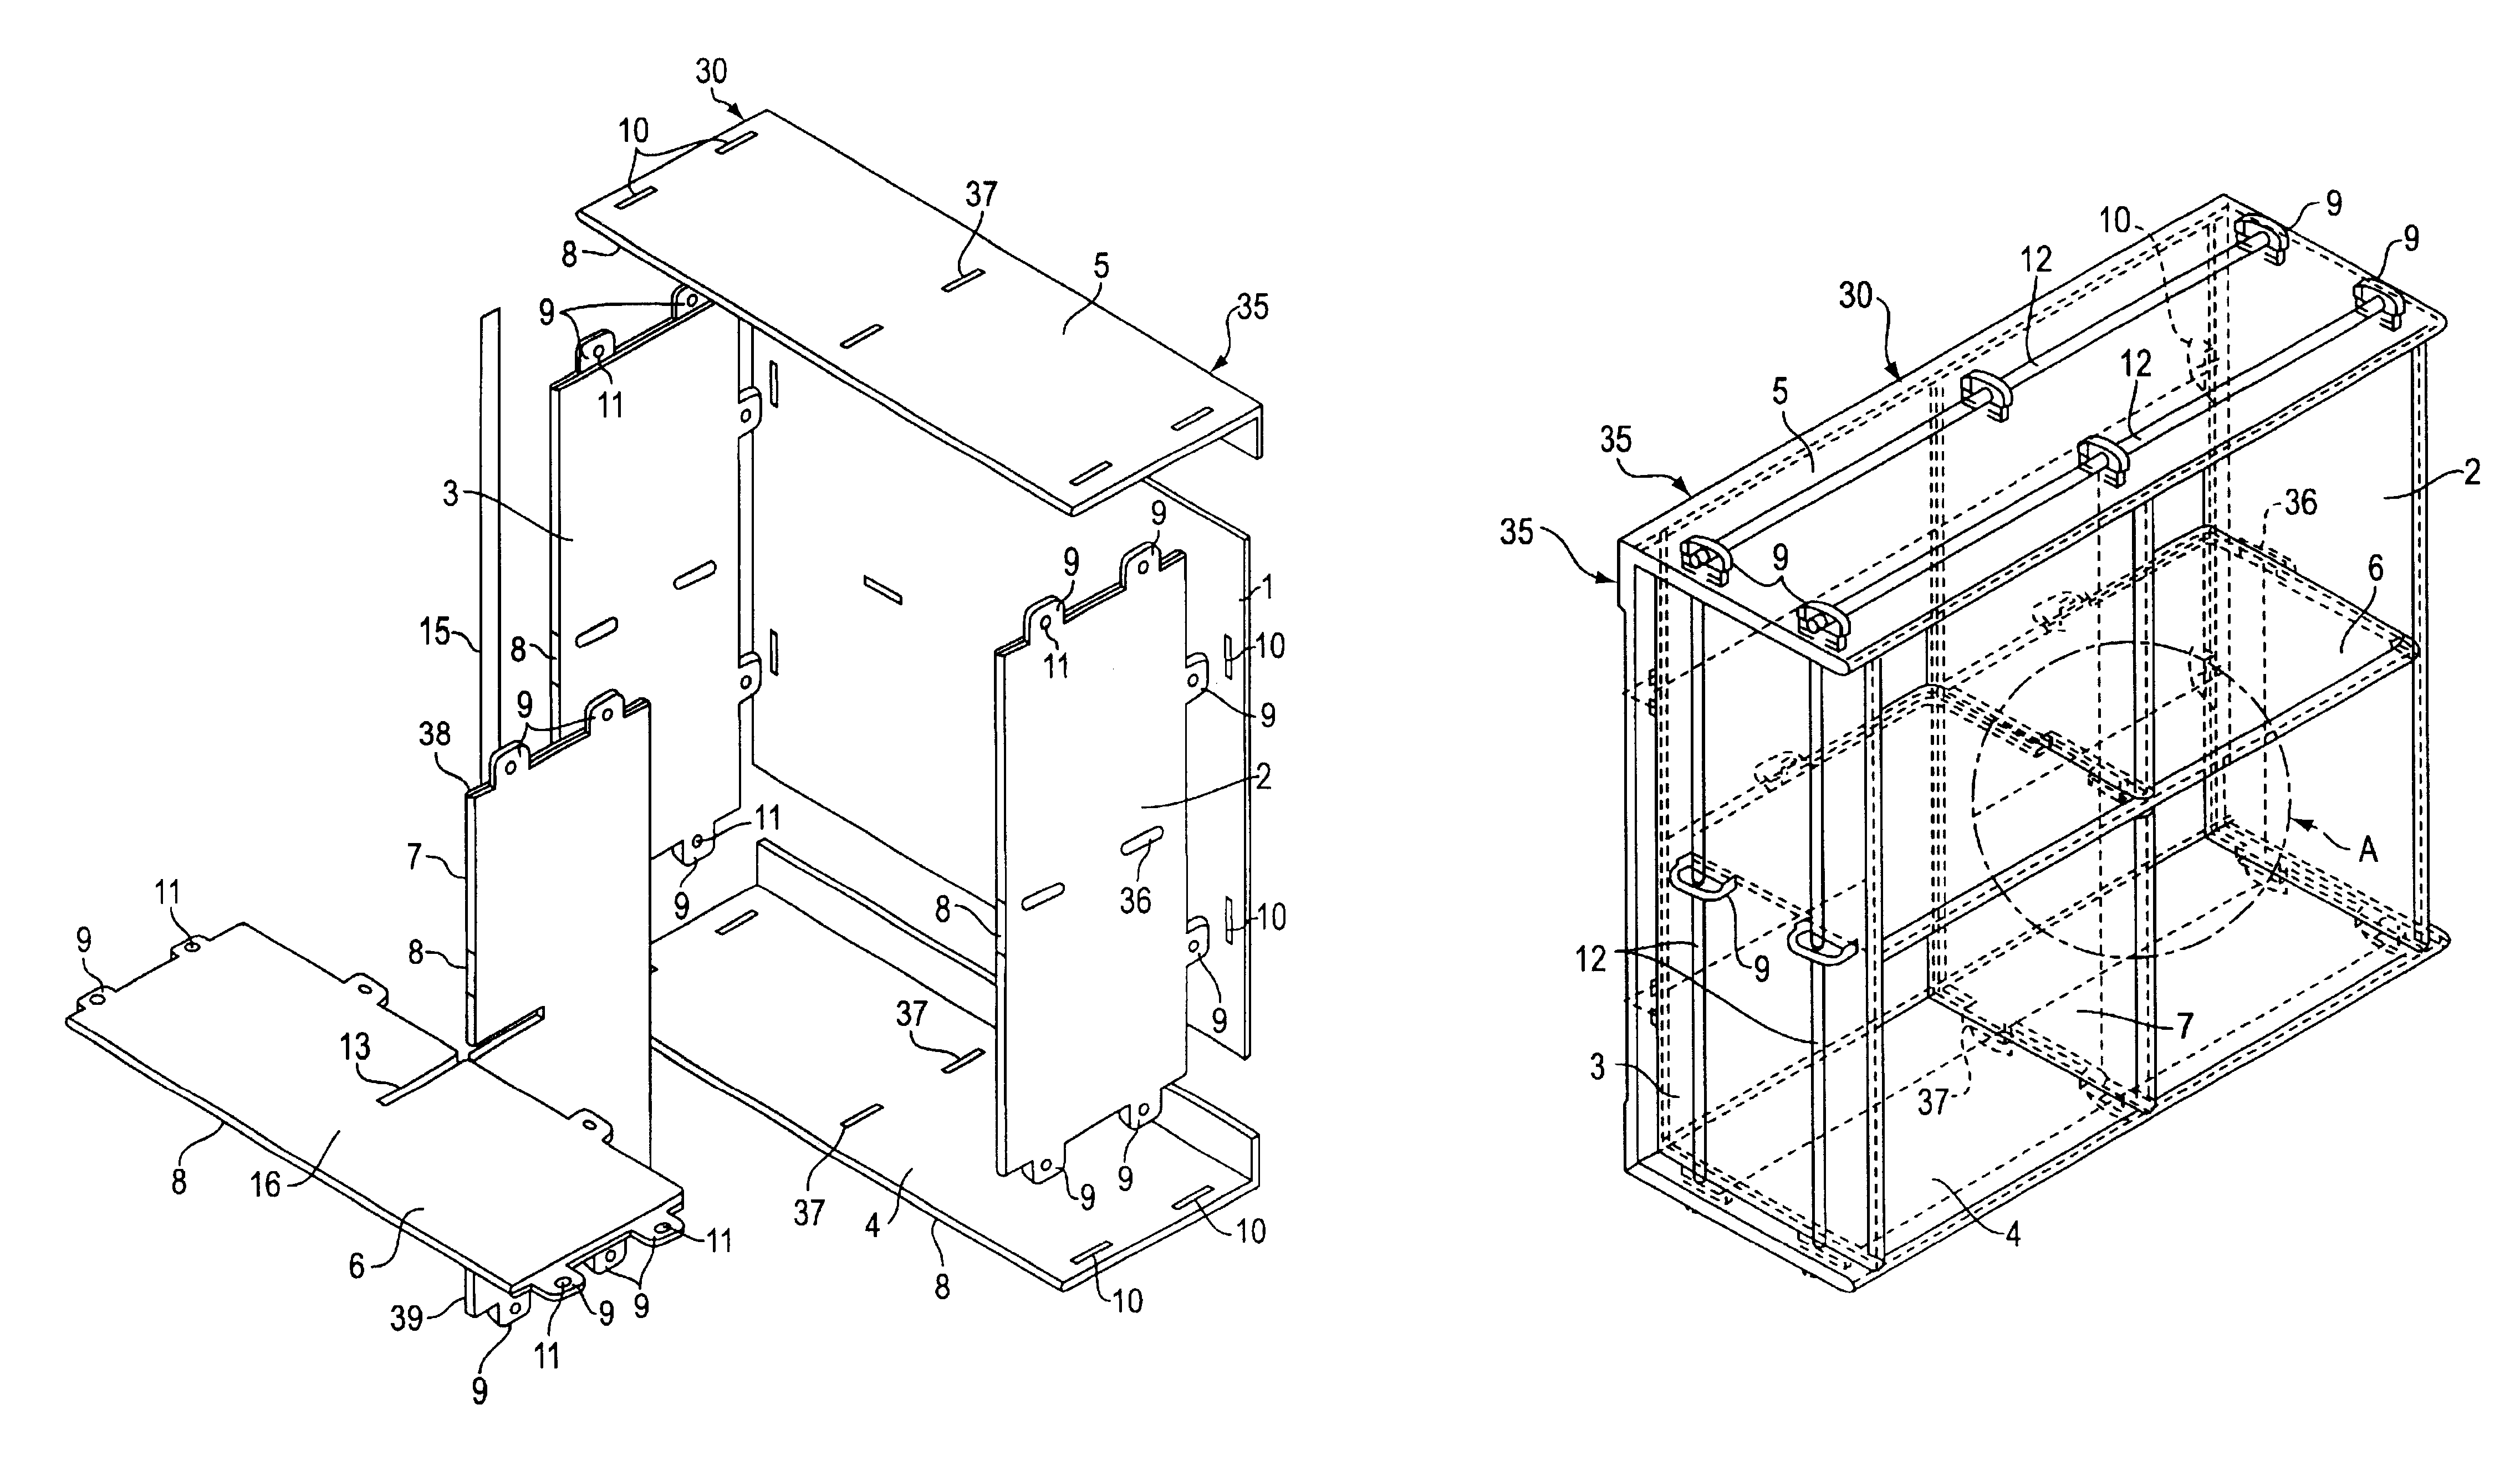 Component shelf system